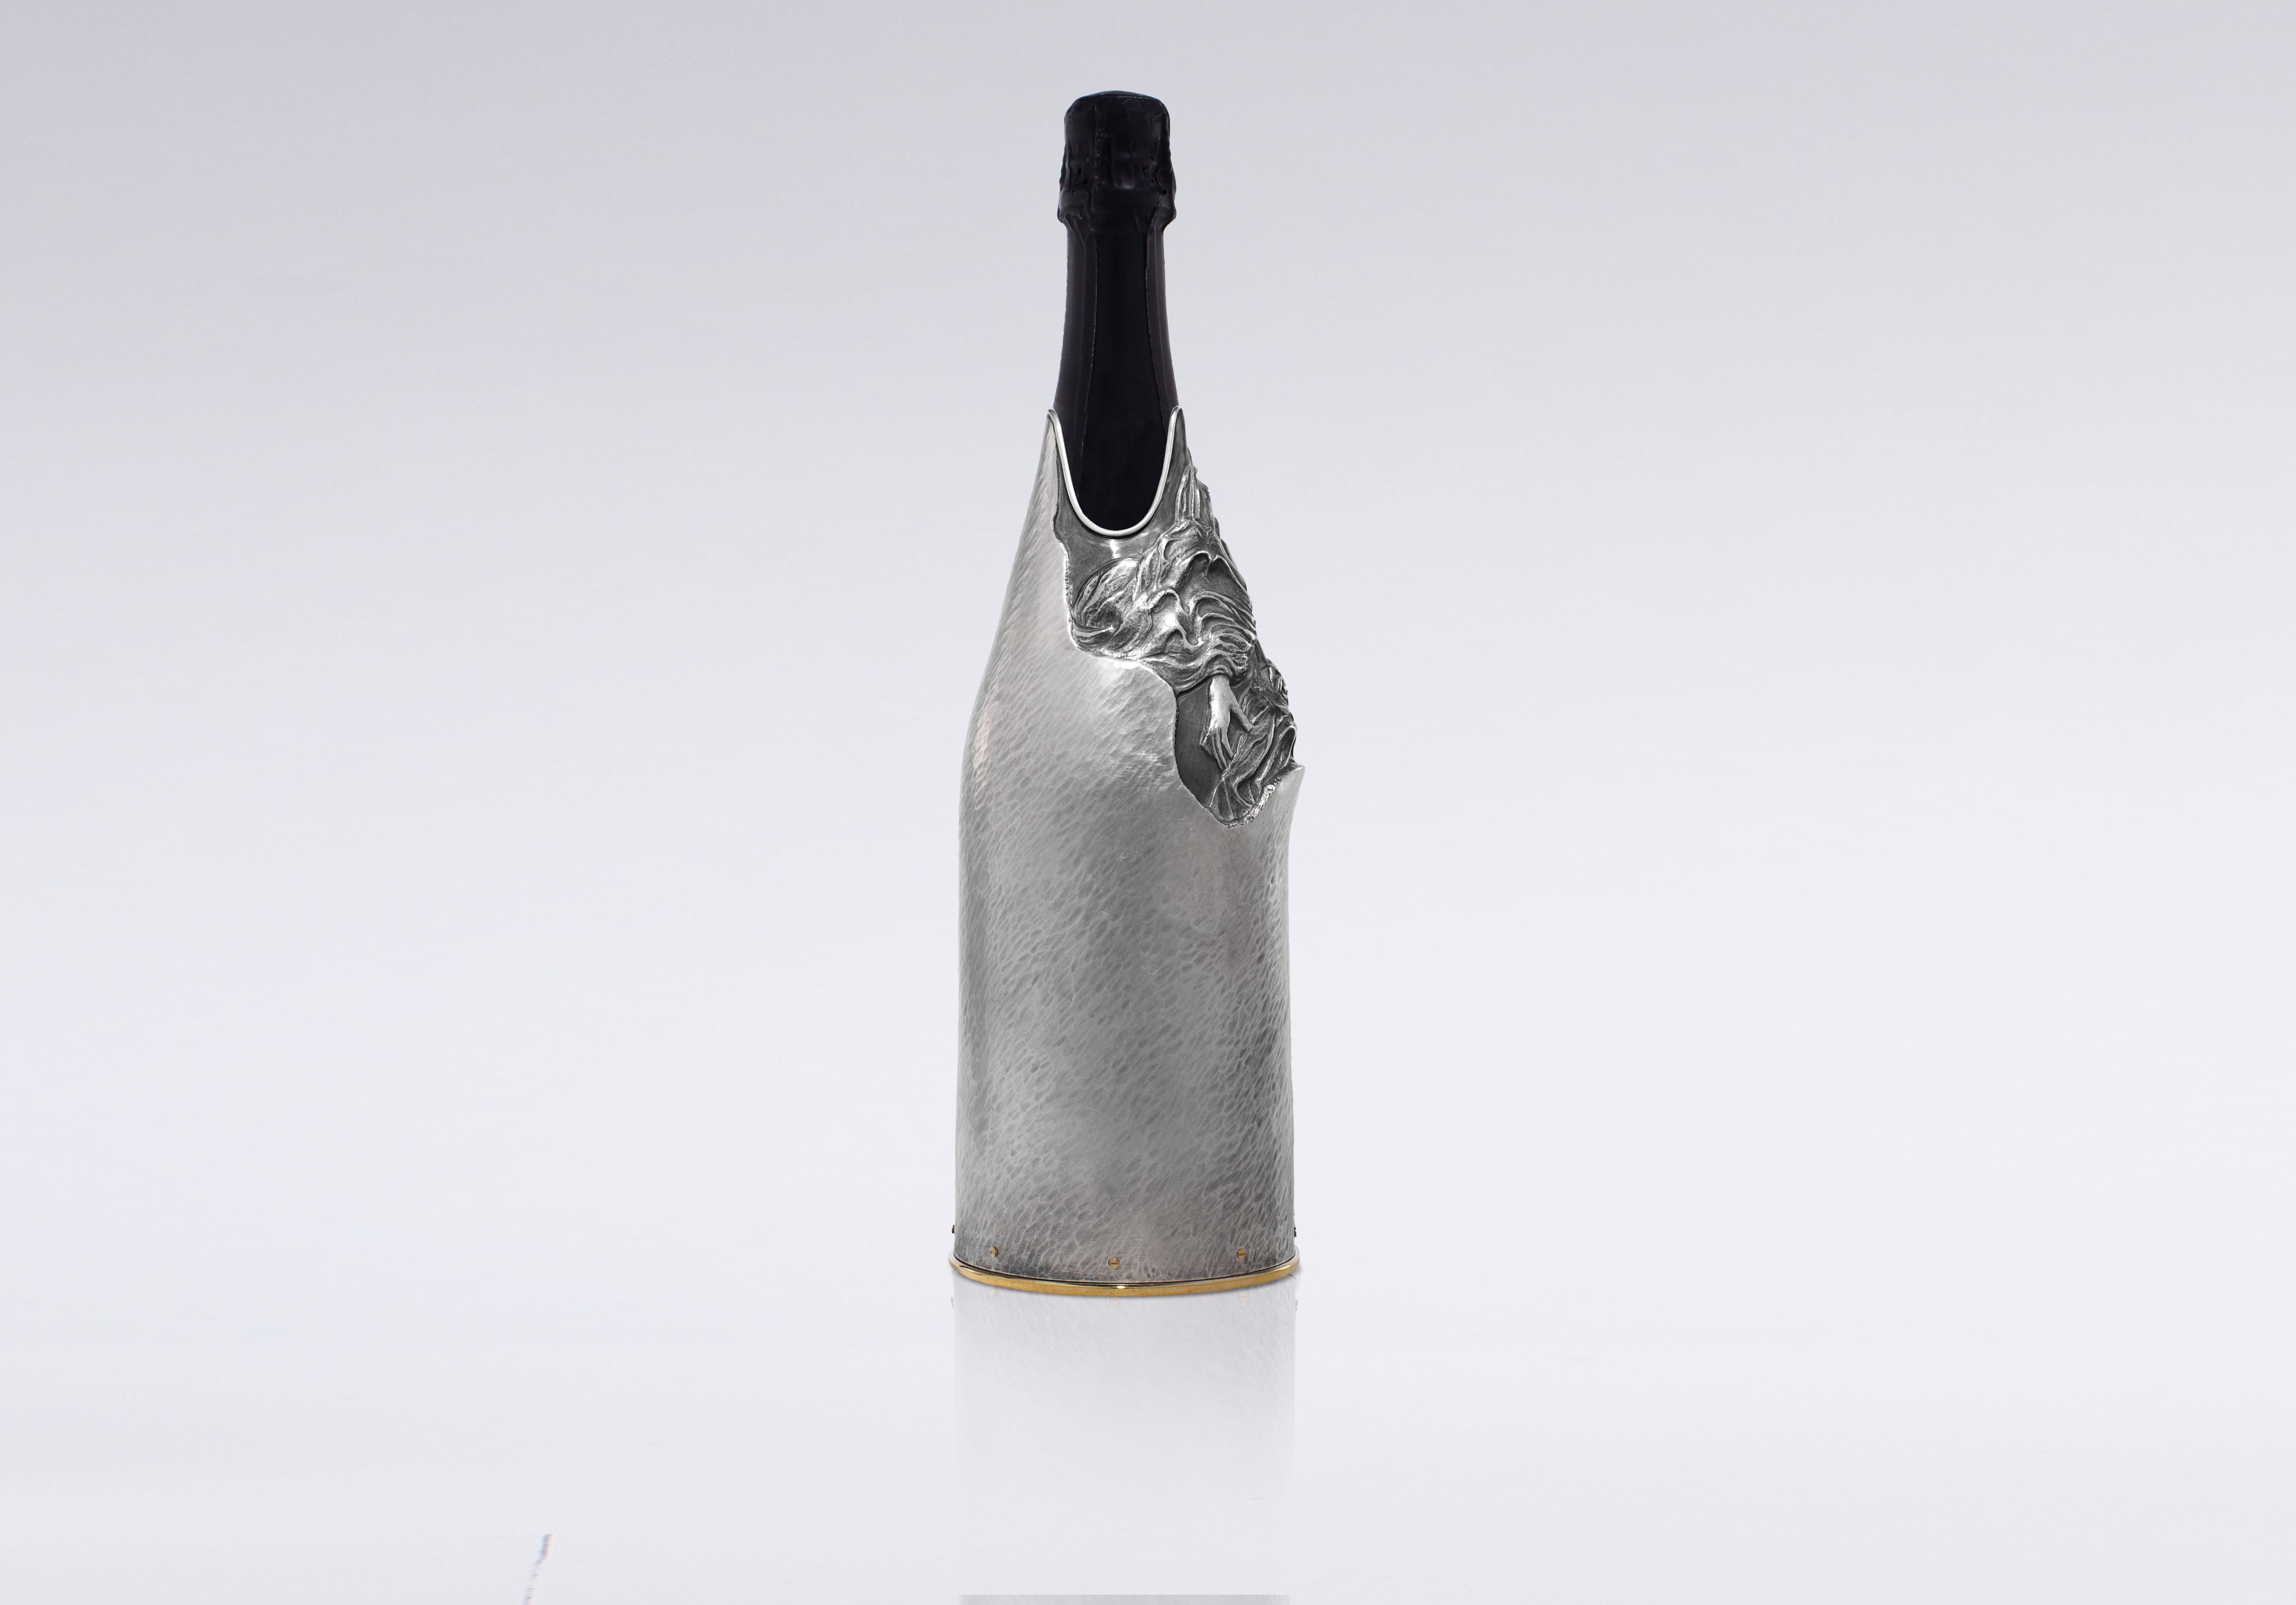 
Entdecken Sie einen einzigartigen K-OVER aus unserer Work of Art-Kollektion, der von Stefano Vigni fachmännisch aus reinem Silber 999/°° gefertigt wurde. Dieses unverwechselbare Stück, mit dem die Geburt seines Enkels Diego gefeiert wird, verbindet